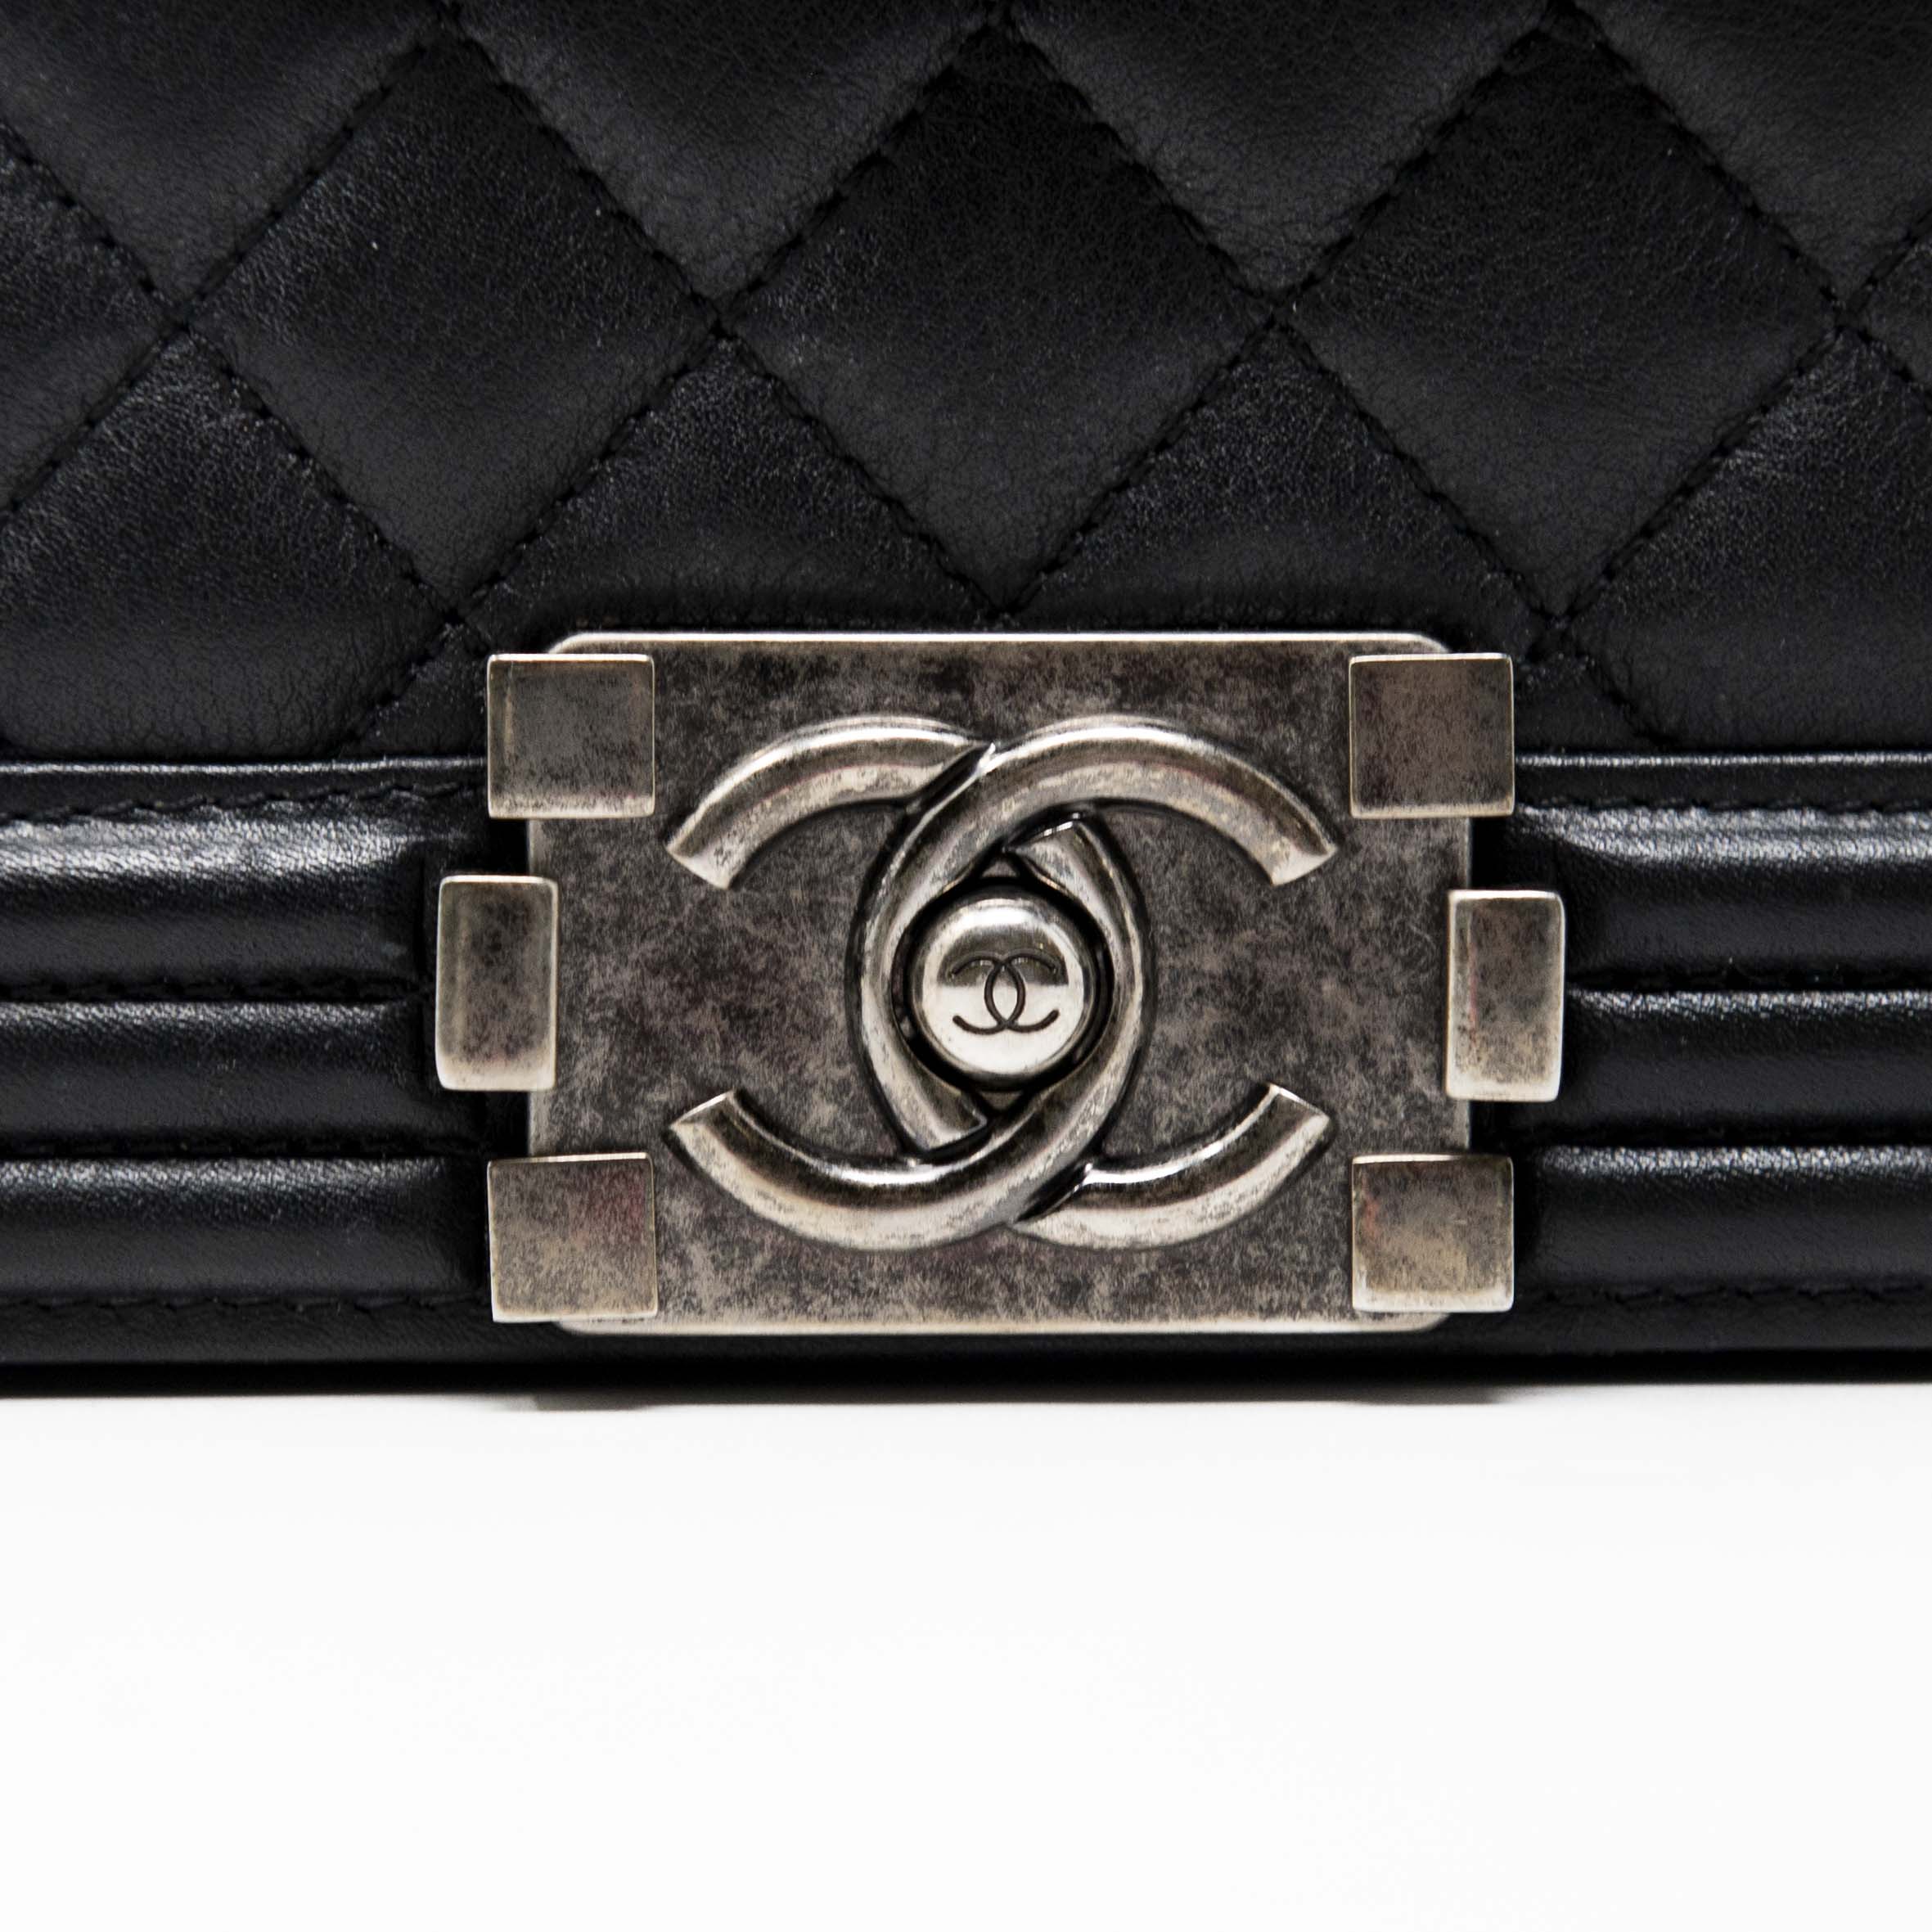 Chanel Black Medium Boy Bag